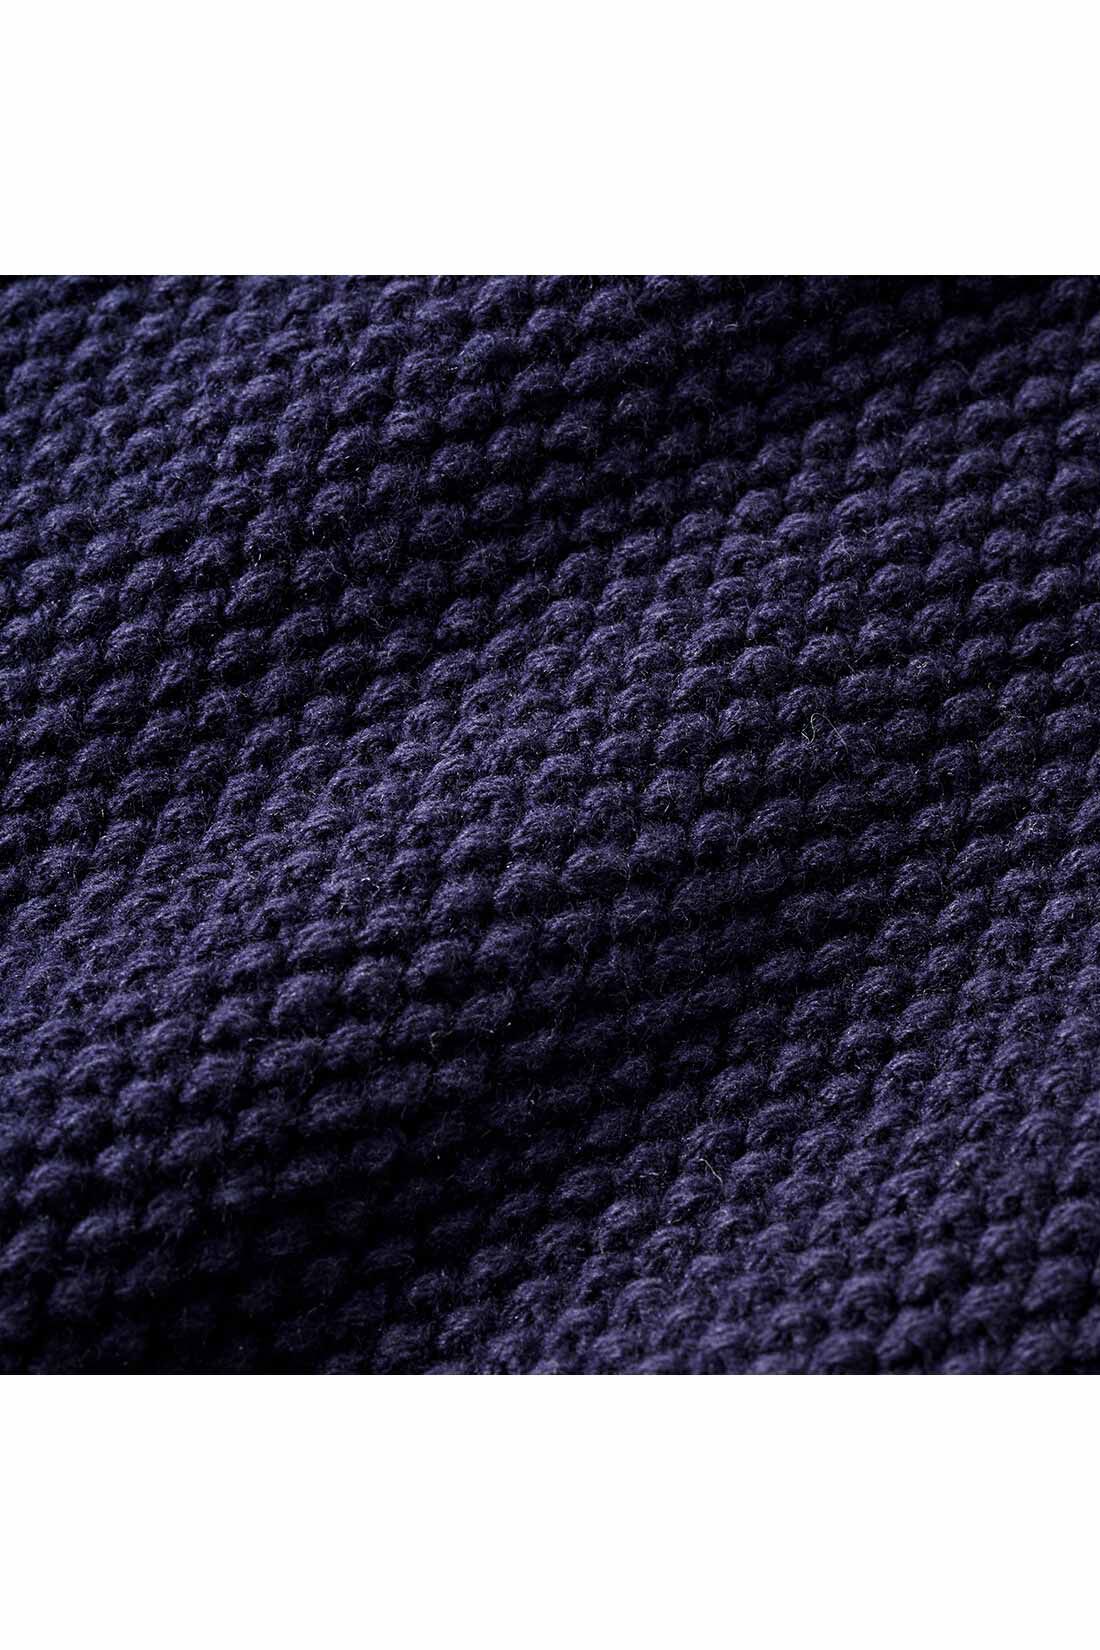 IEDIT|IEDIT[イディット]　小森美穂子さんコラボ かのこ編みのニットジャケット〈ネイビー〉|肌当たりはさらっと涼やか。ぽこぽこと表情のあるかのこの編み地がおしゃれ。